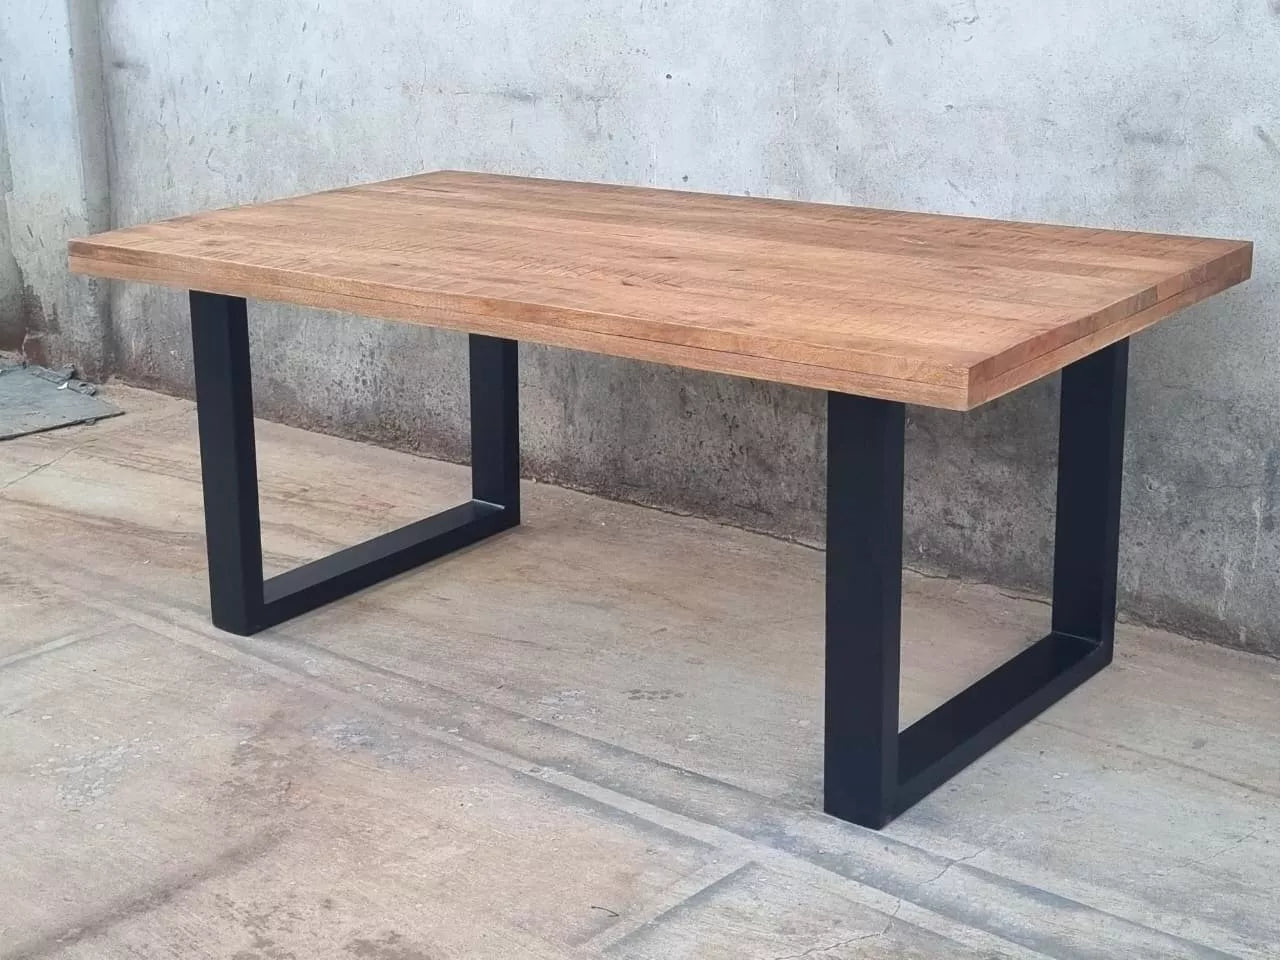 Le prix de cette table industrielle en bois et métal baisse de 280 €